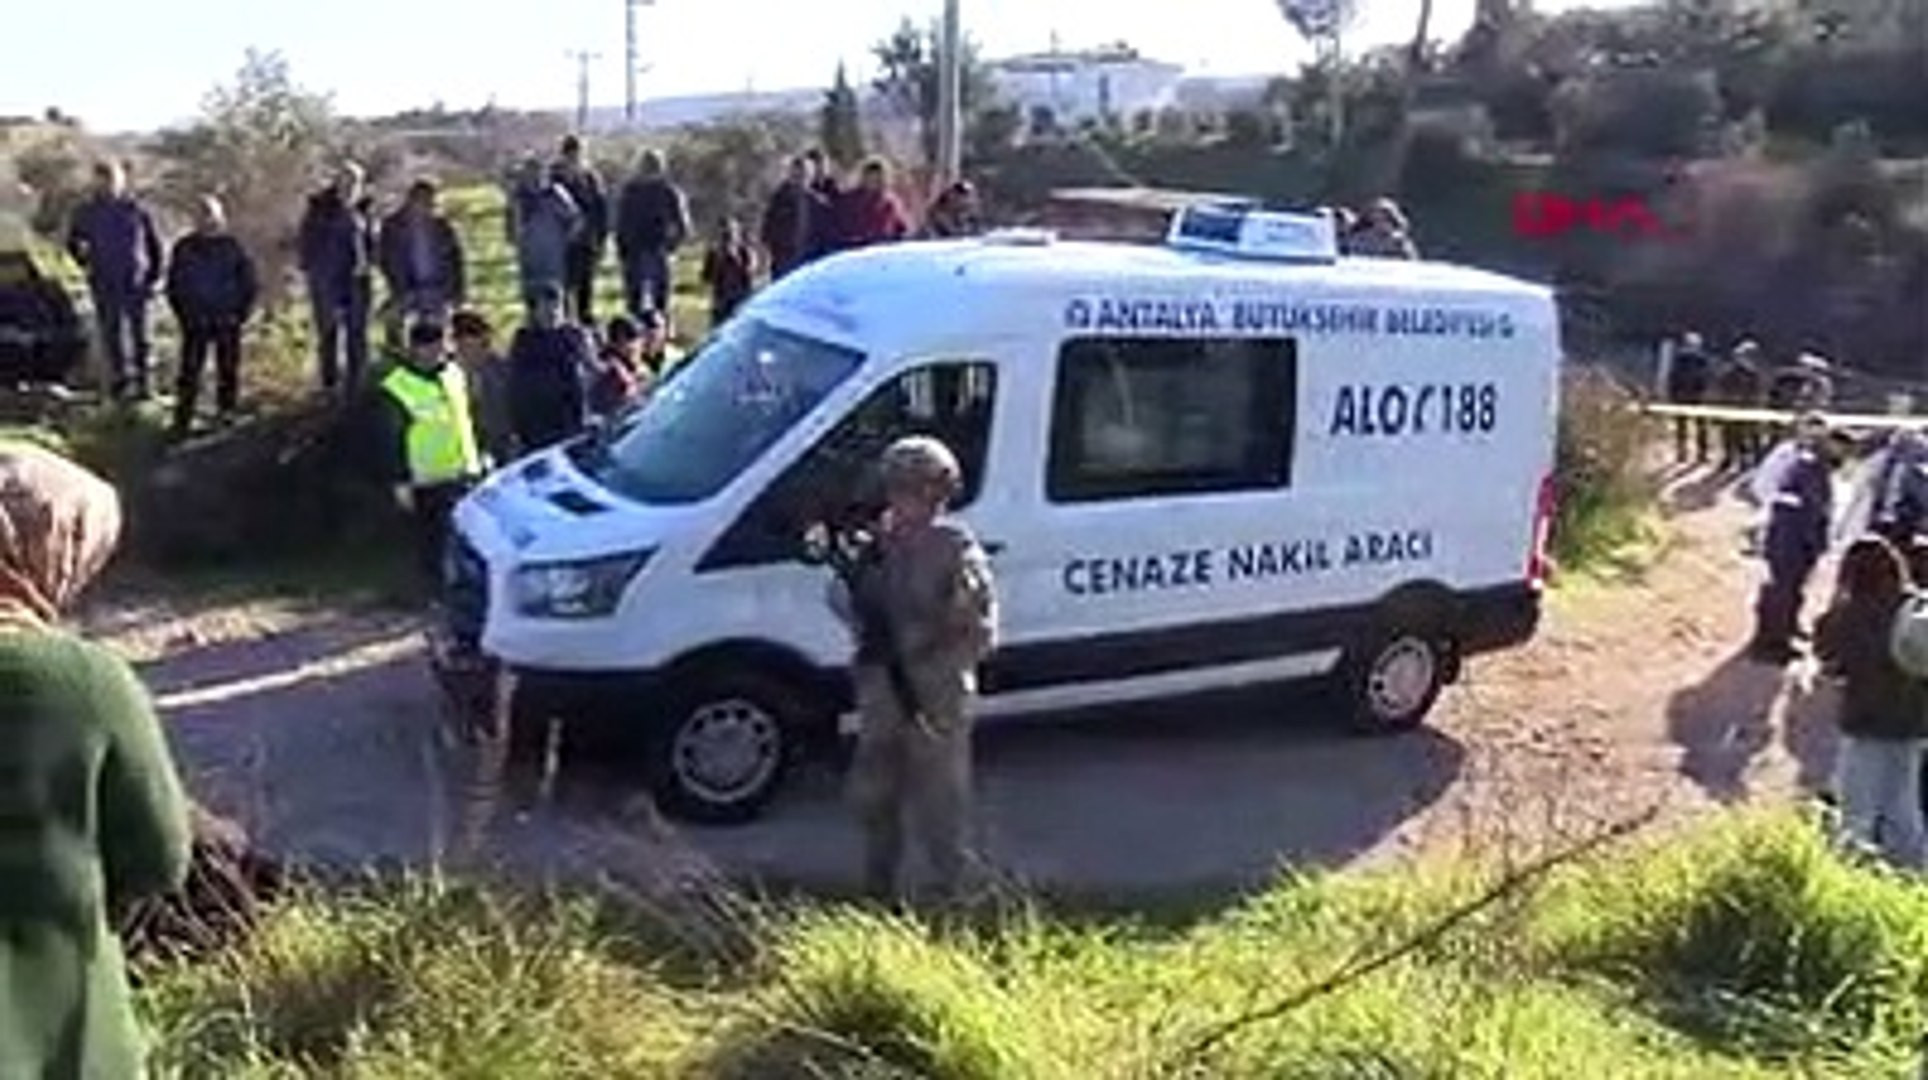 Antalya'da katliam: 3 kişiyi öldürüp kaçtı!